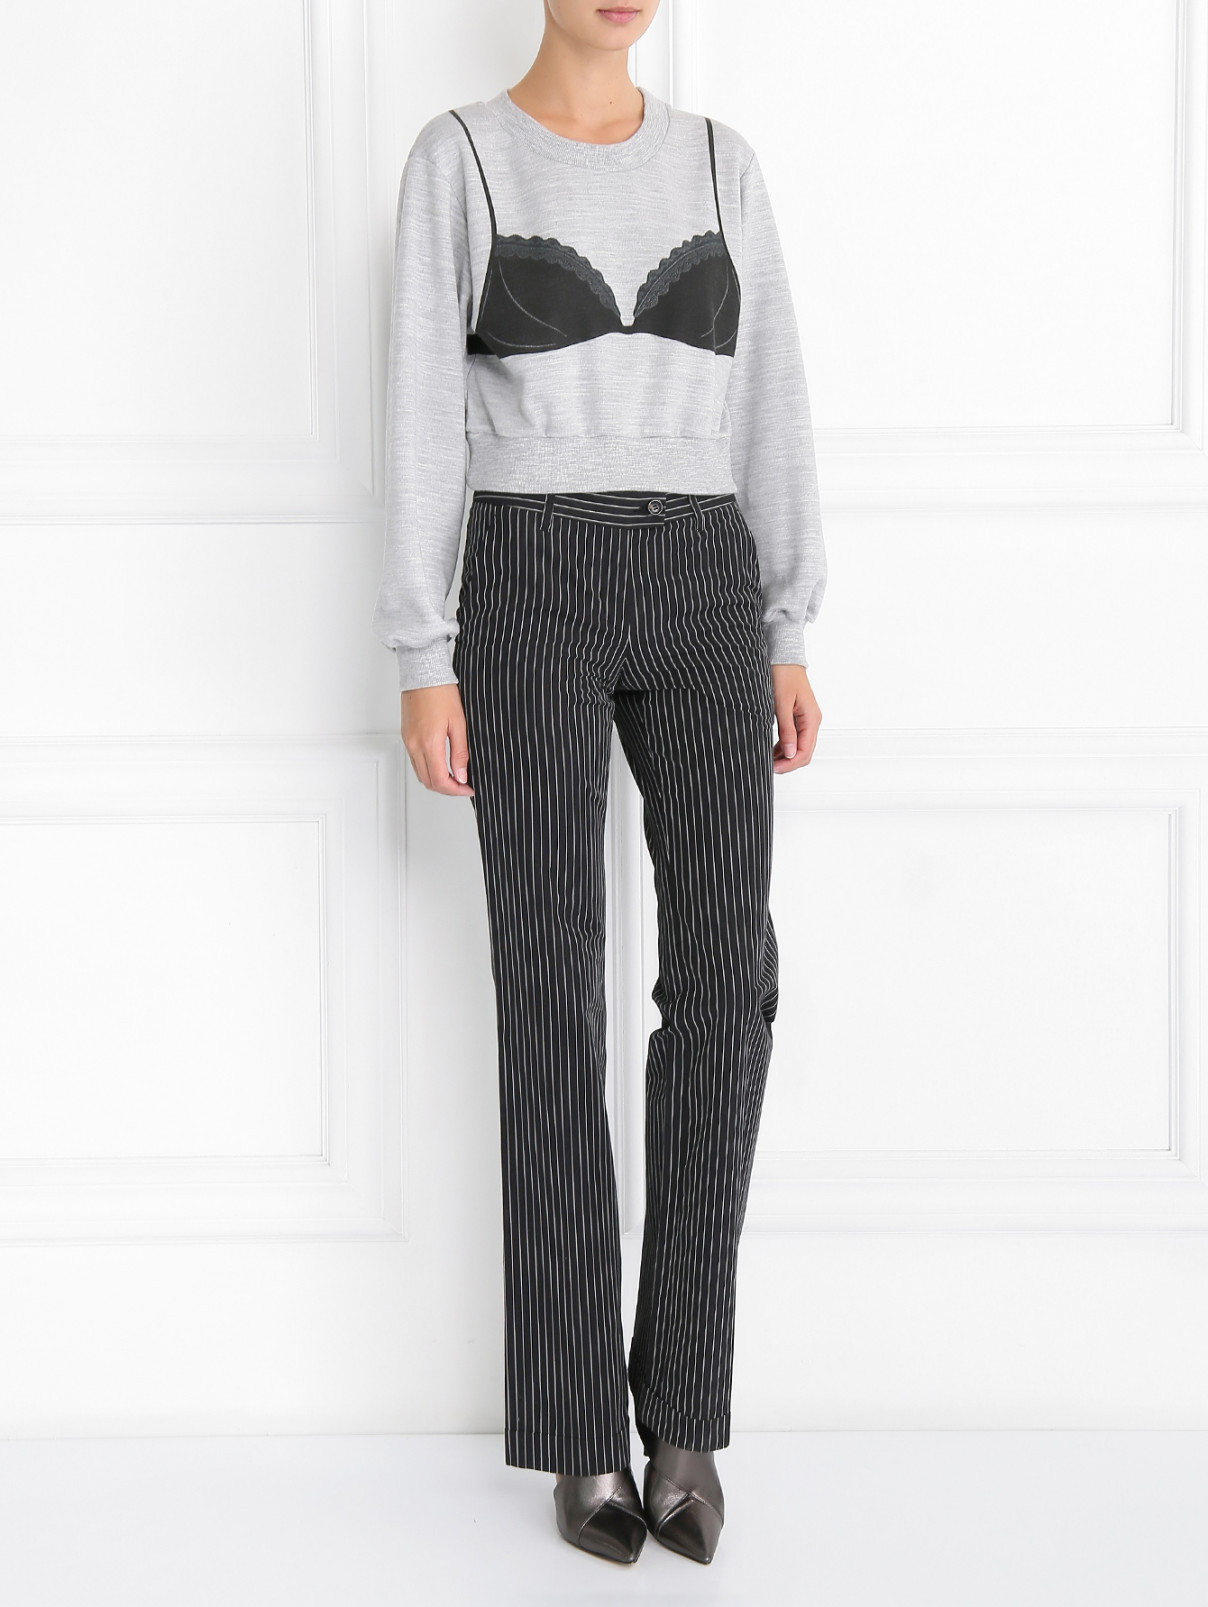 Укороченный джемпер с принтом Moschino Couture  –  Модель Общий вид  – Цвет:  Серый